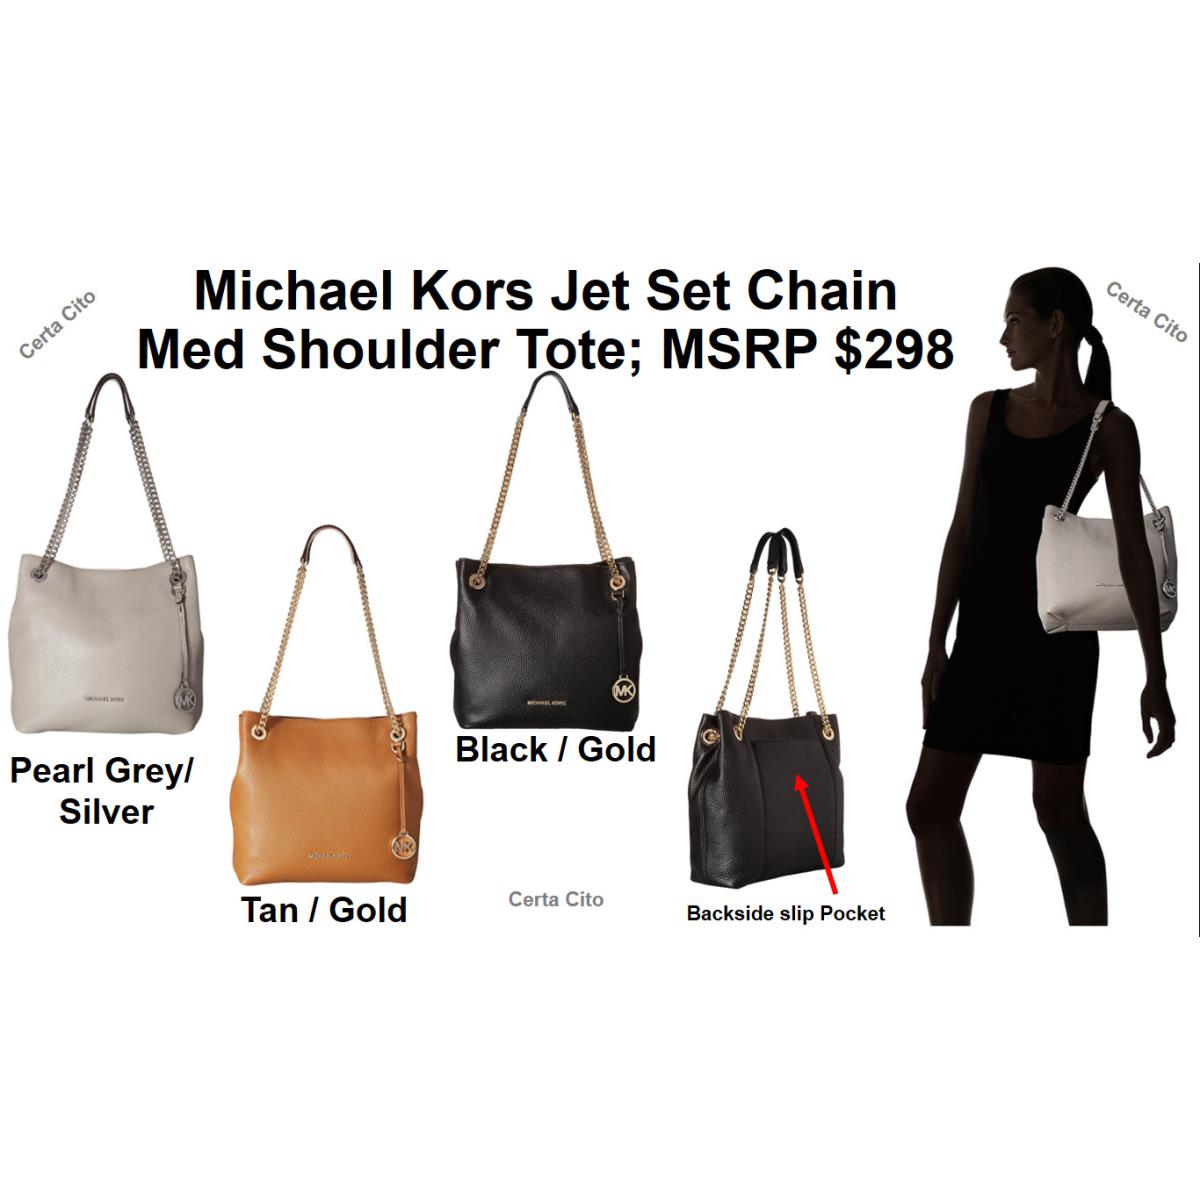 Michael Kors Jet Set Chain Med Shoulder Tote Black/gold Gray/silver